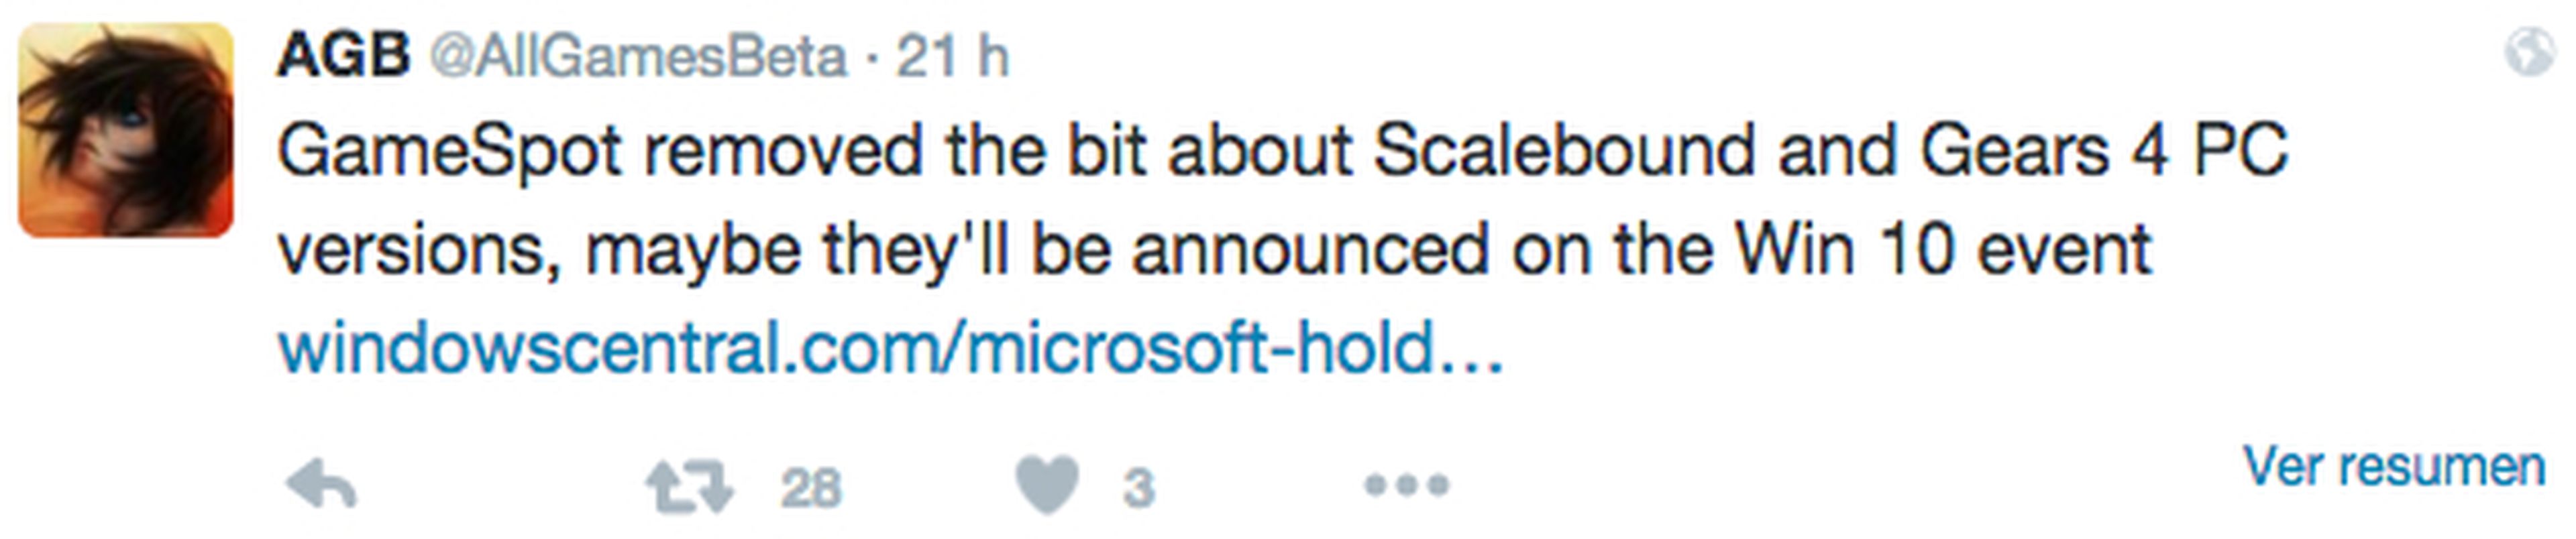 Gears 4 y Scalebound podrían llegar a PC